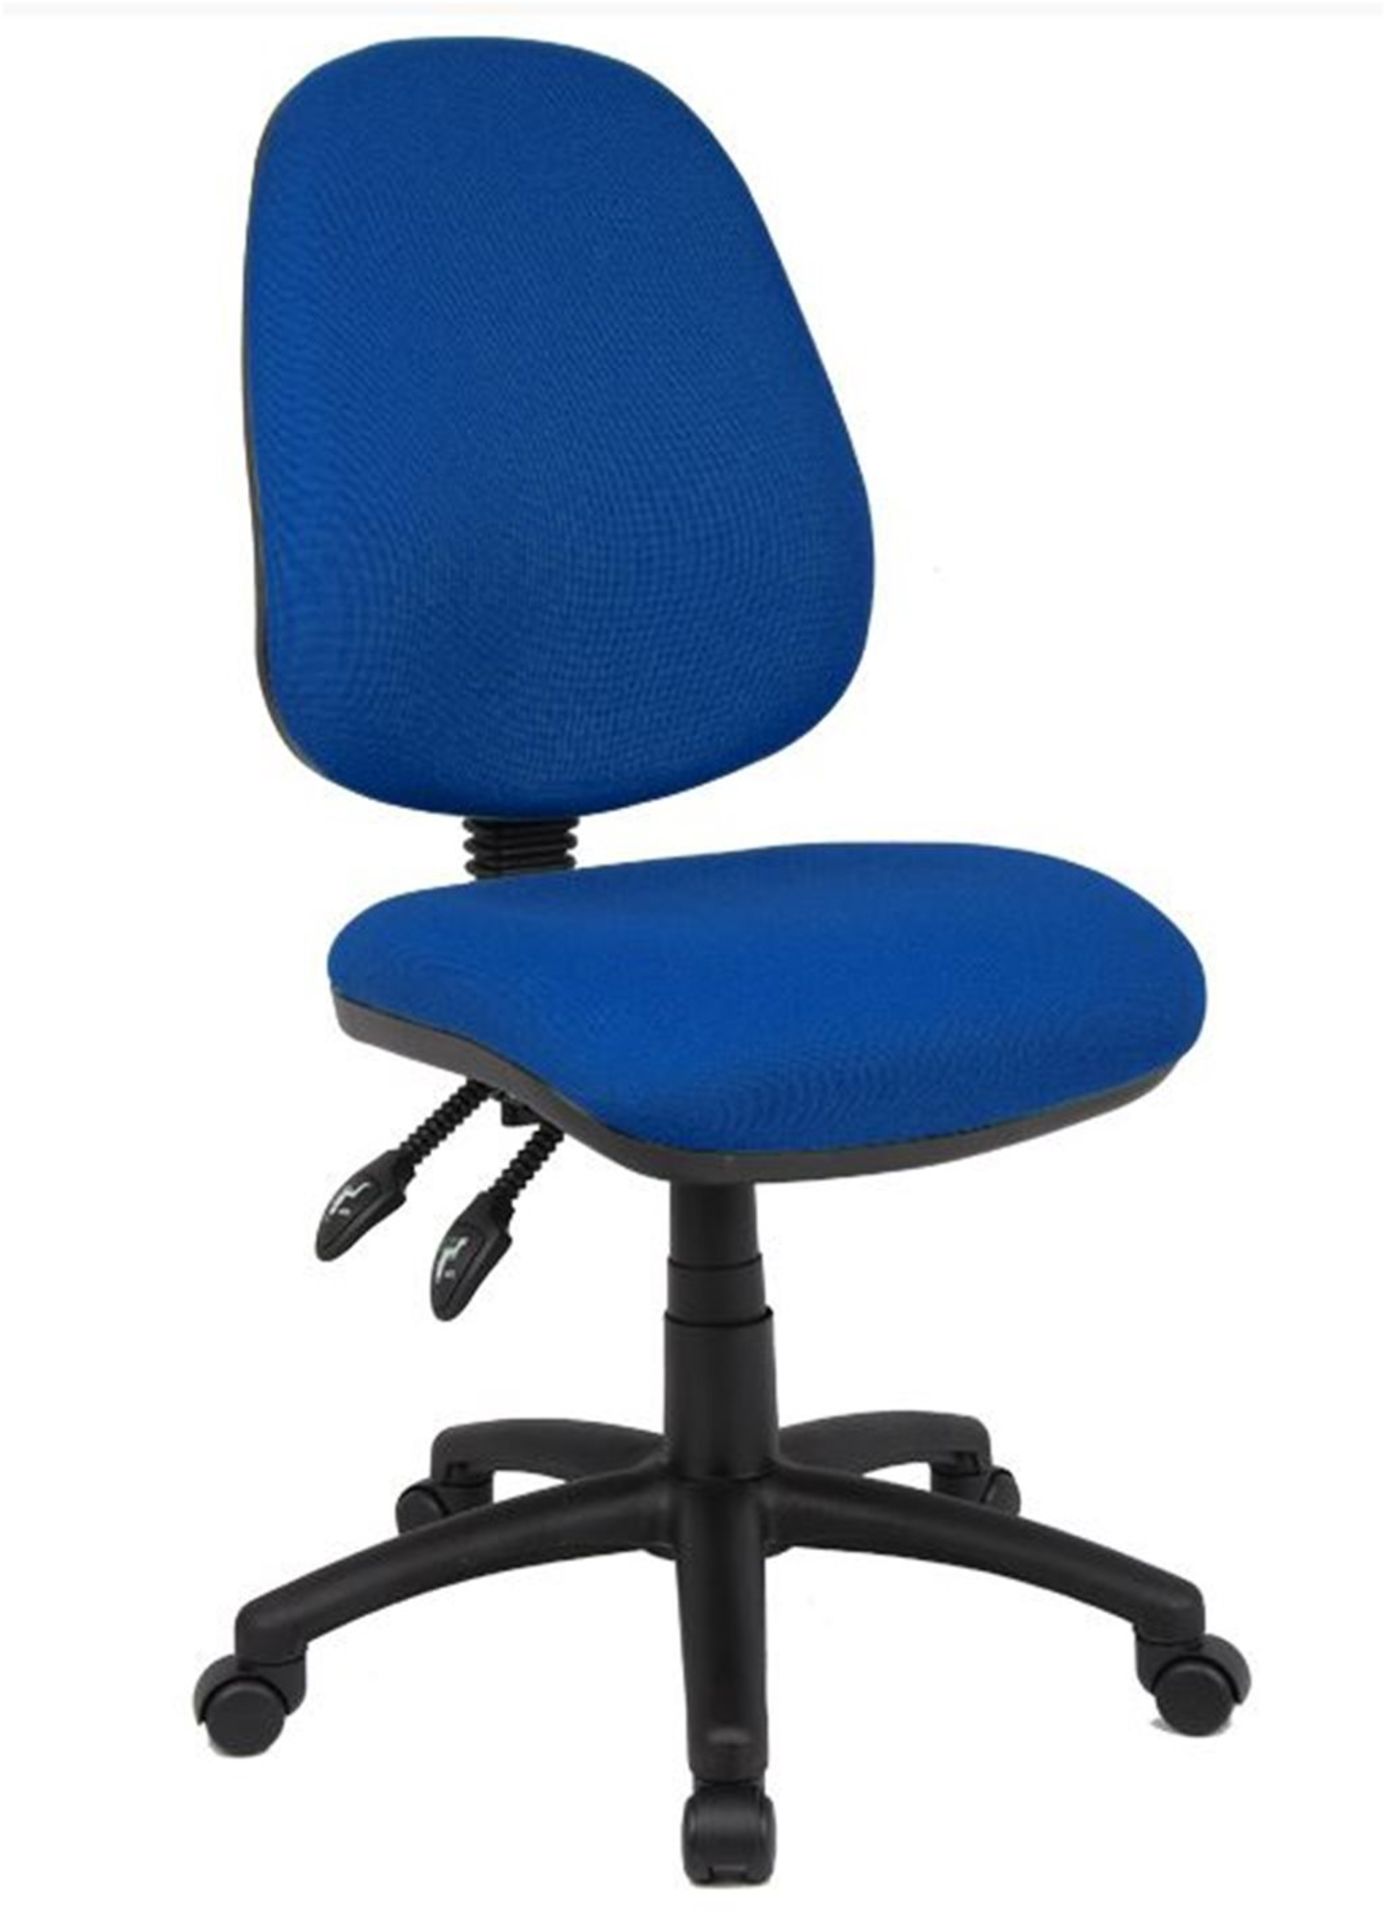 Vantage operators chair in blue.